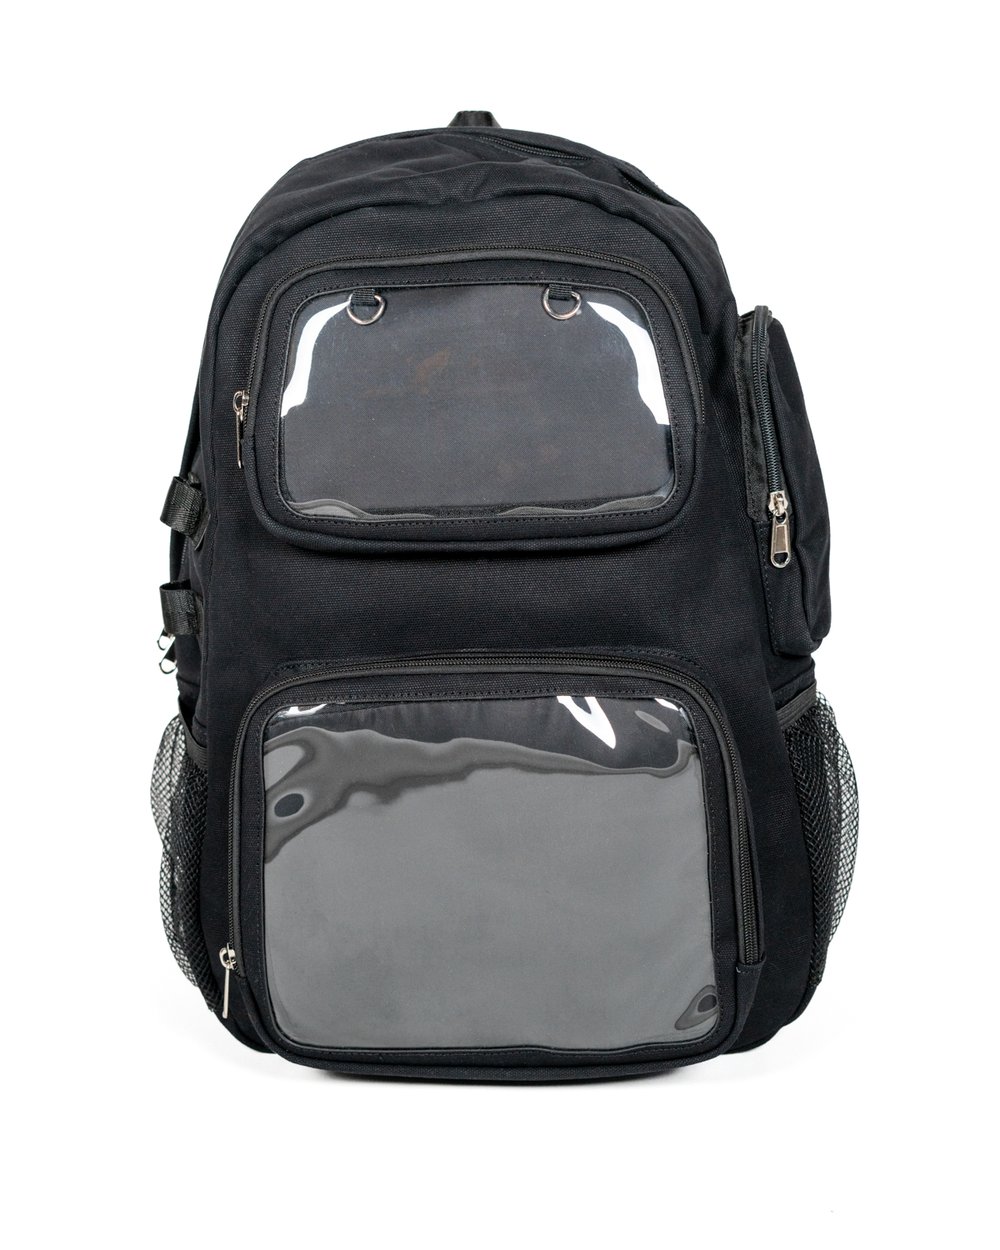 Functional Ita Backpack - Black